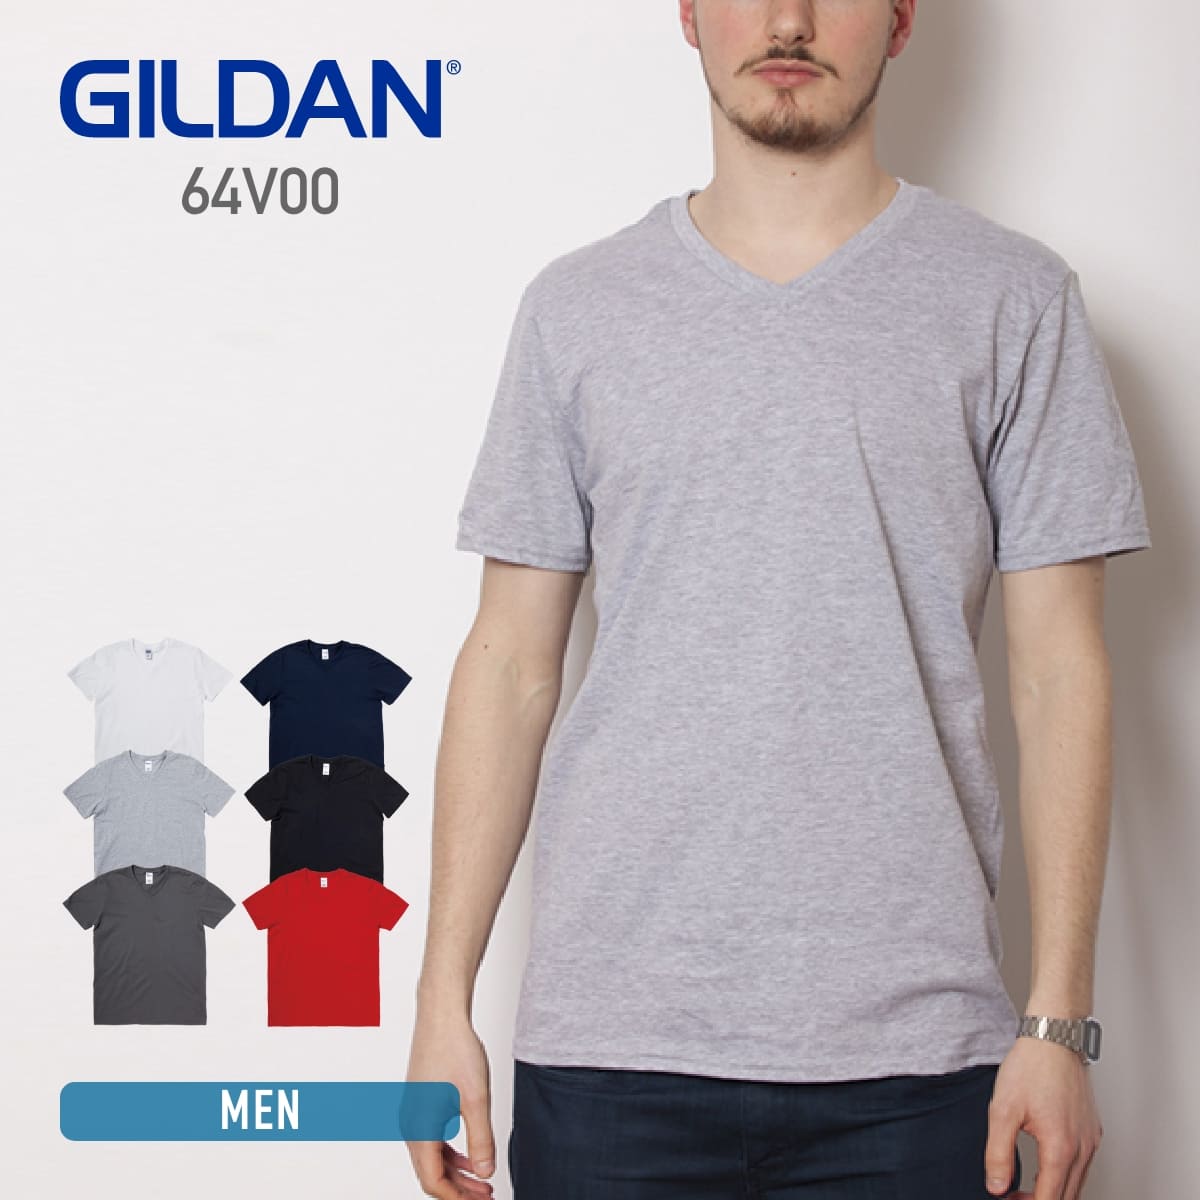 Tシャツ メンズ 半袖 GILDAN ギルダン 4.5 oz ソフトスタイル VネックTシャツ 64V00 ジャパンフィット 男女兼用 シンプル